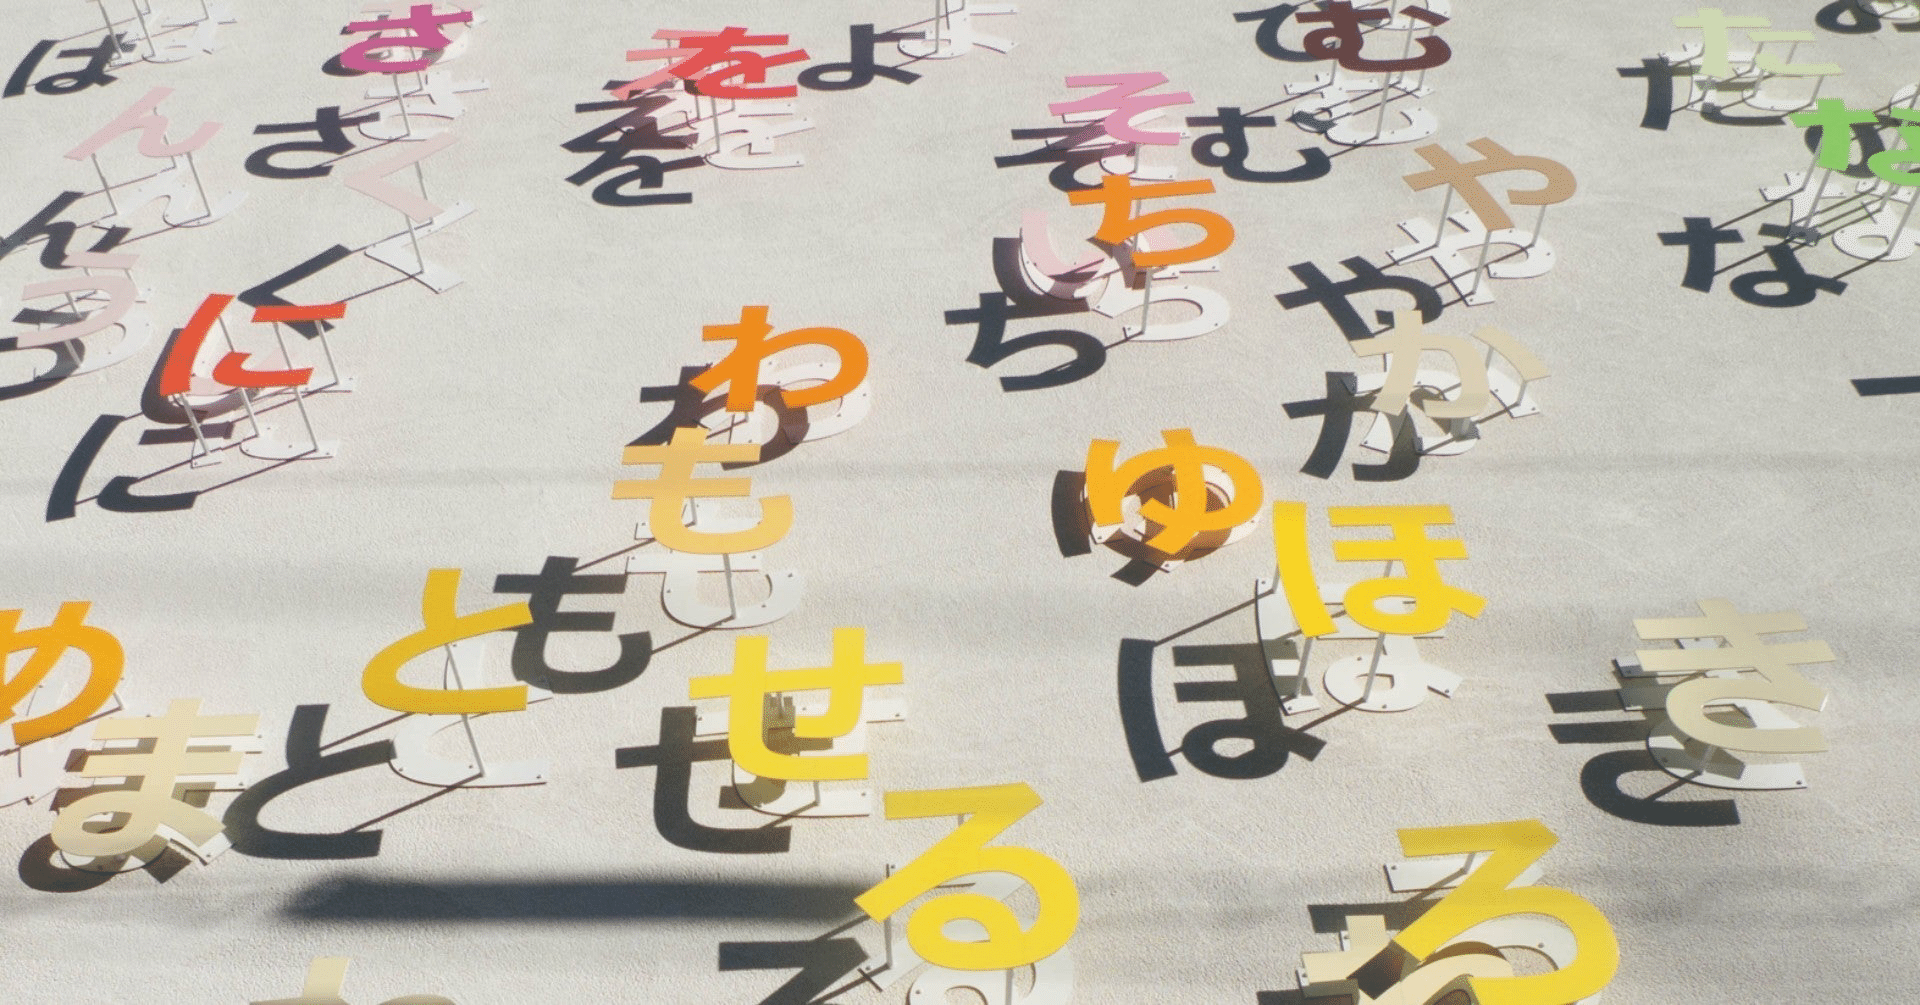 ラーメンズ第16回公演『TEXT』にみる日本語の美しさと多様性 (櫻井 